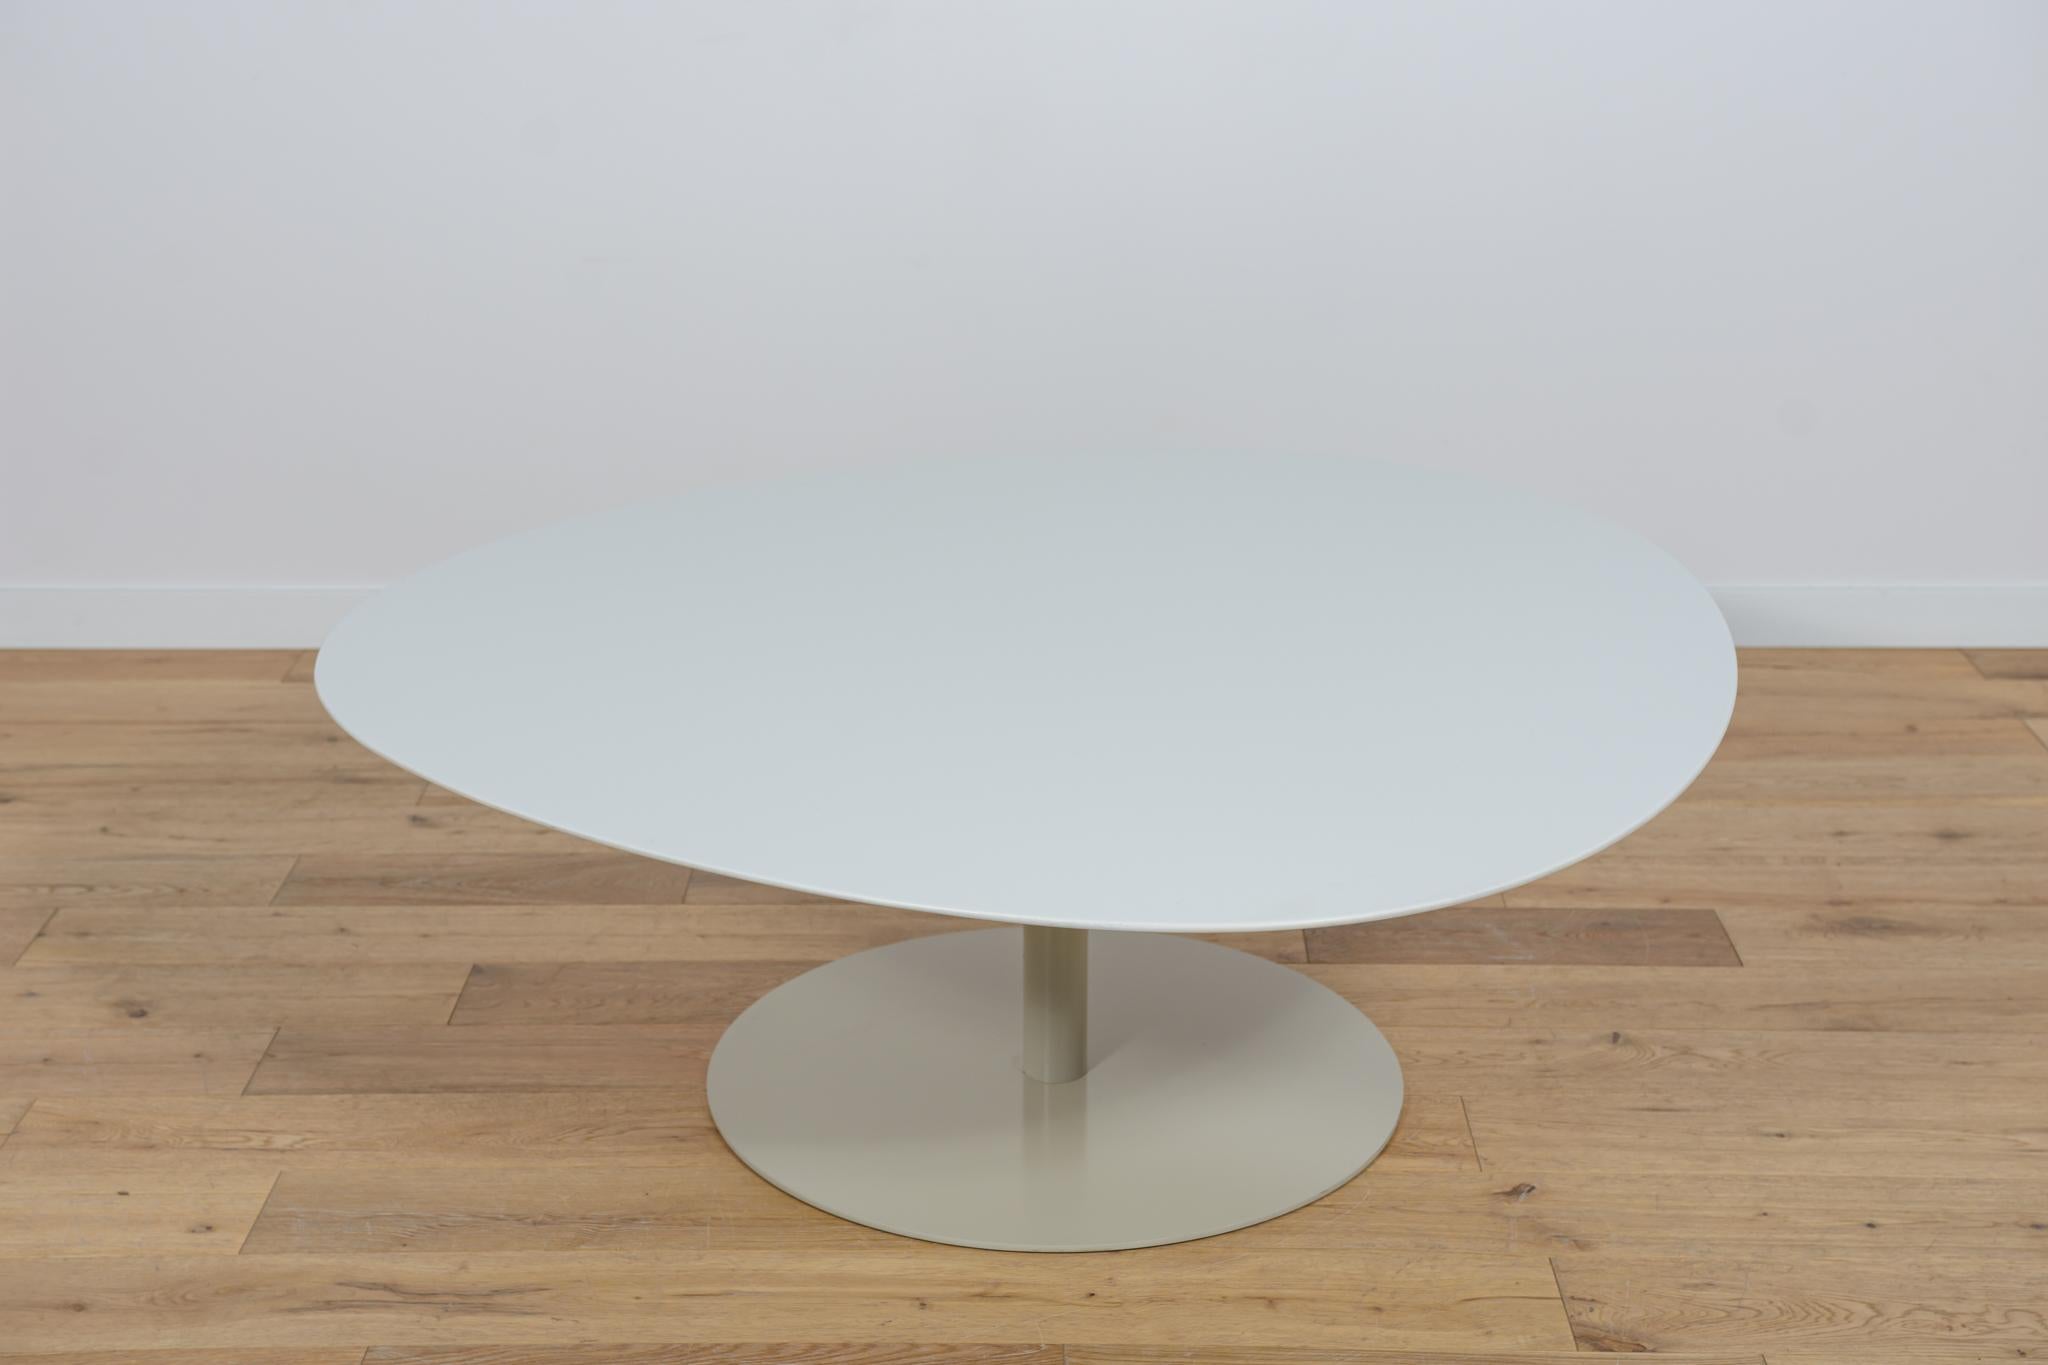 La table MV50 conçue par Morten Voss pour le fabricant danois Fritz Hansen au cours de la première décennie du XXIe siècle. Des meubles à la forme moderniste intéressante.  La table MV50 a été rénovée, nettoyée de l'ancienne surface et repeinte.